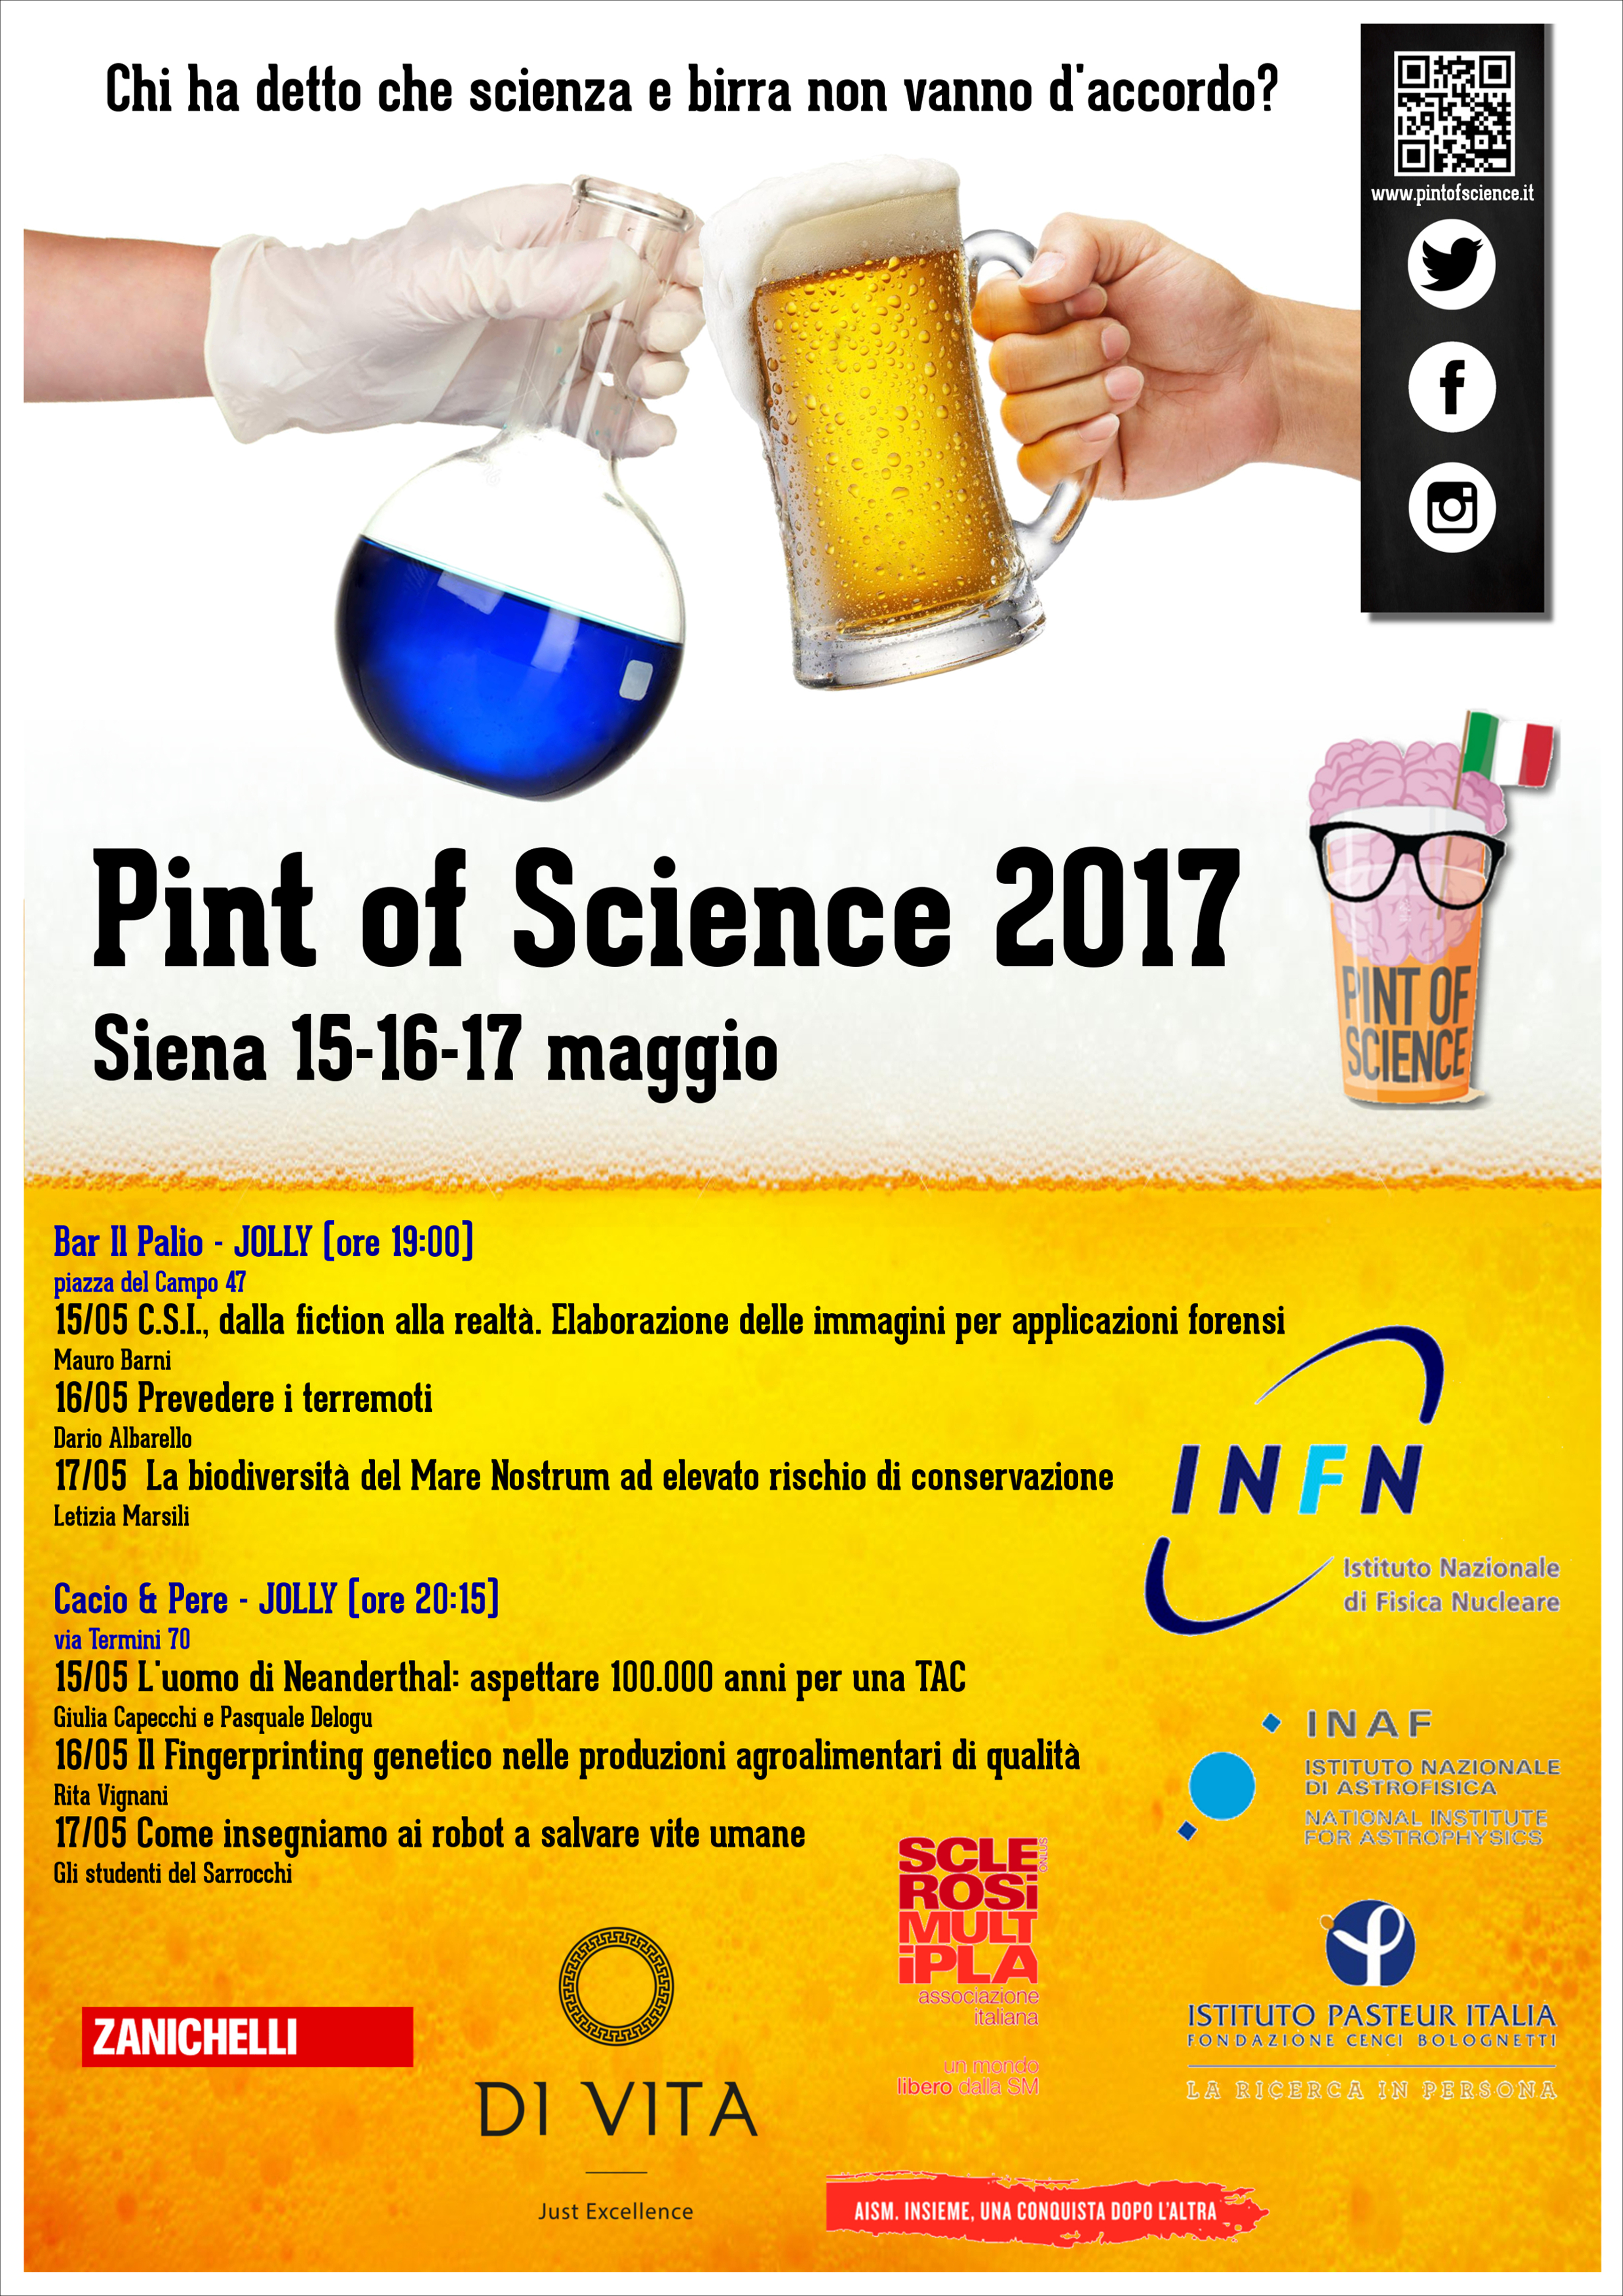 Pint of Science Siena 2017